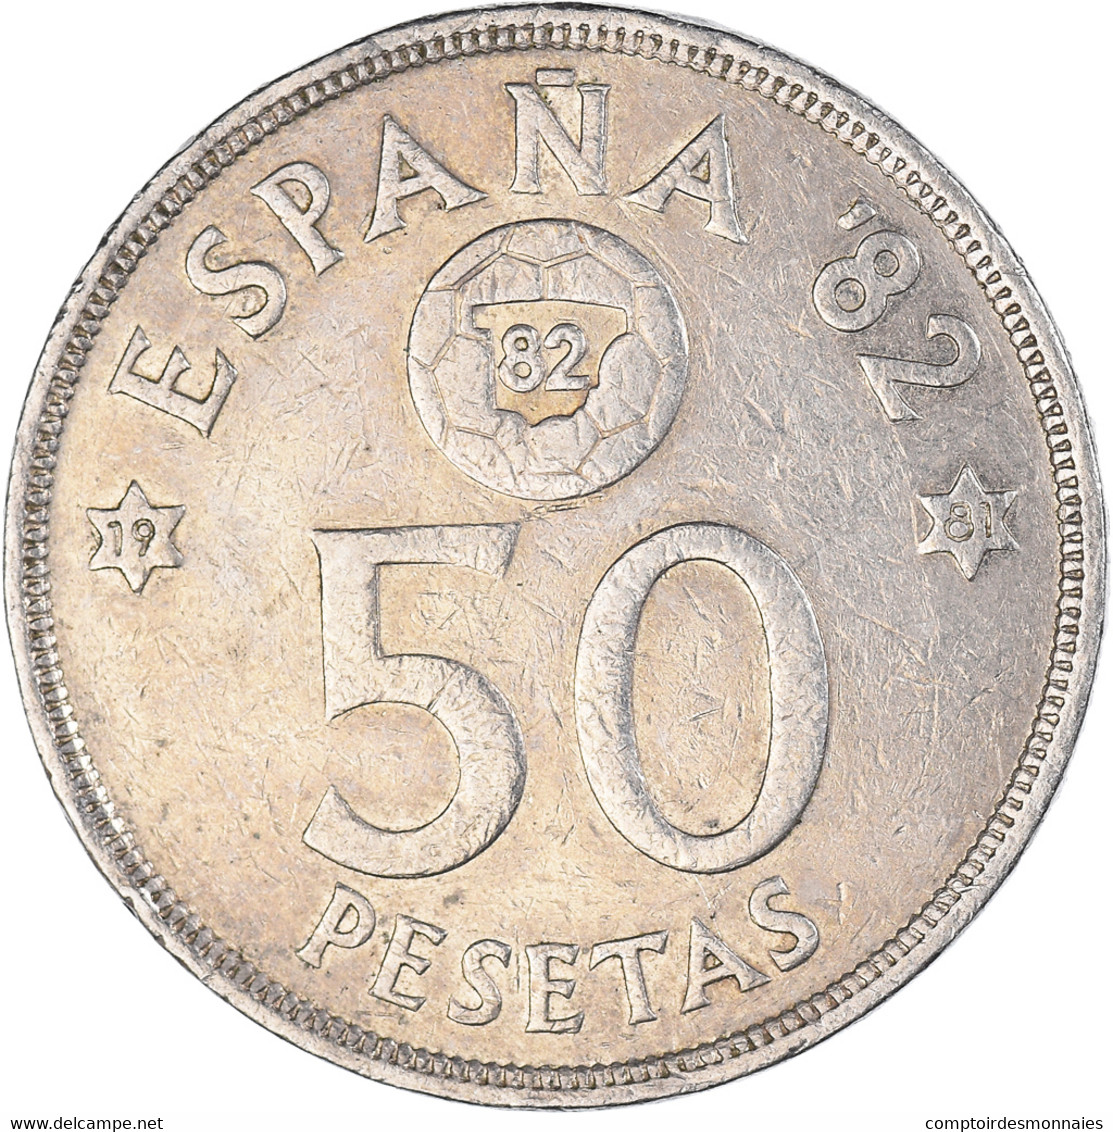 Monnaie, Espagne, 50 Pesetas, 1980 - 50 Peseta